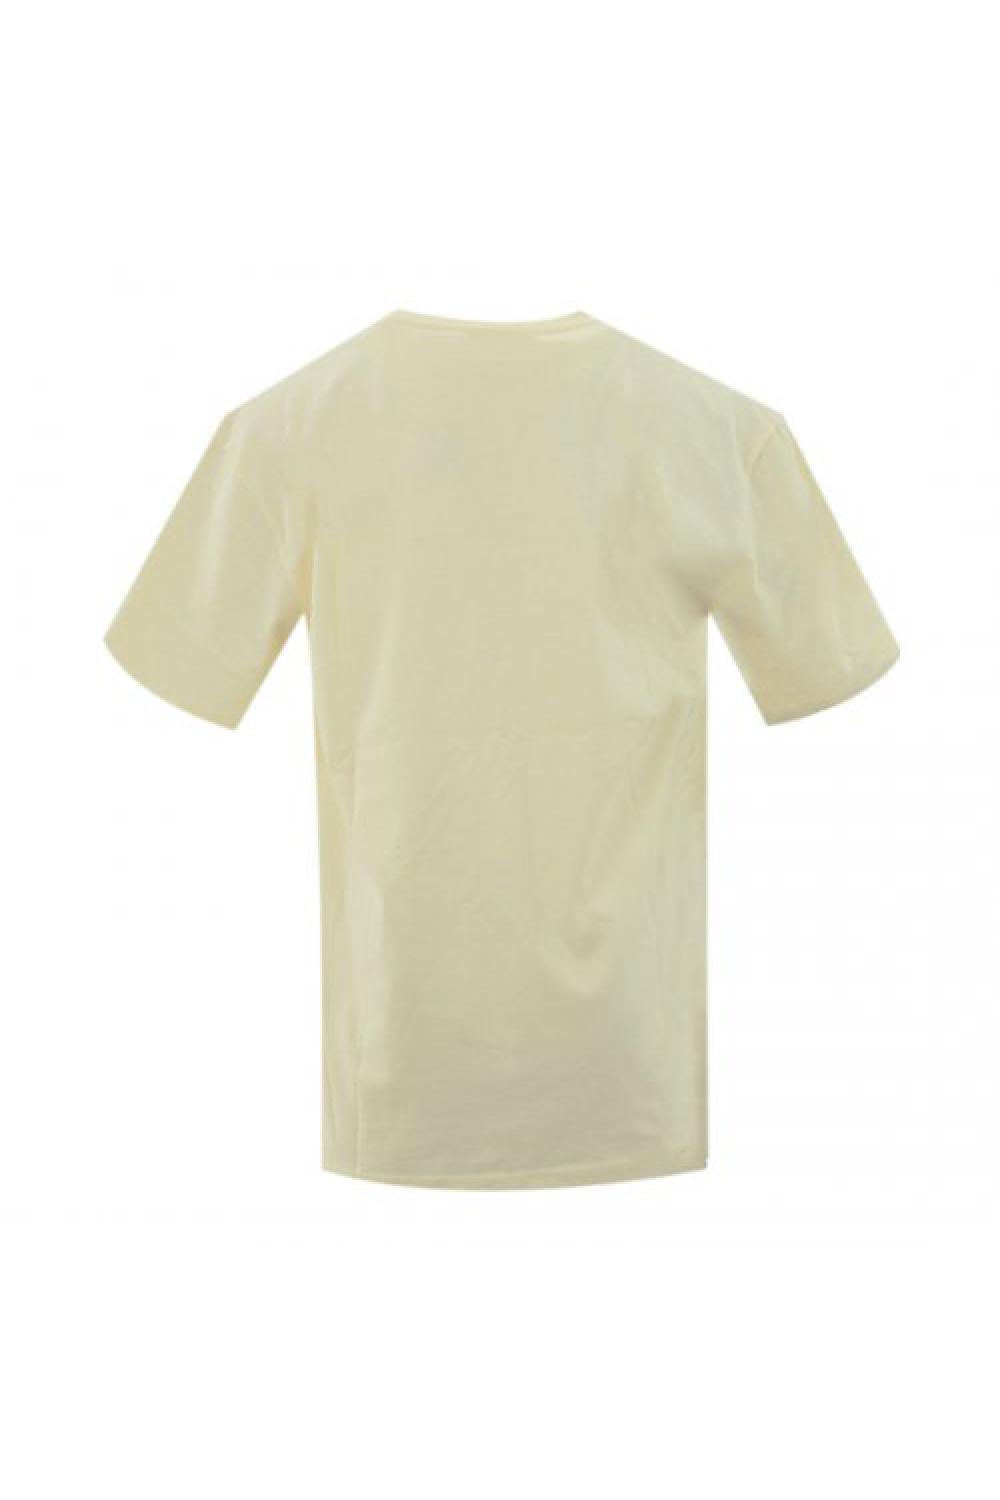 KARL KANI T-shirt Small Signature Unisex - Μπεζ (KU221-001-4)